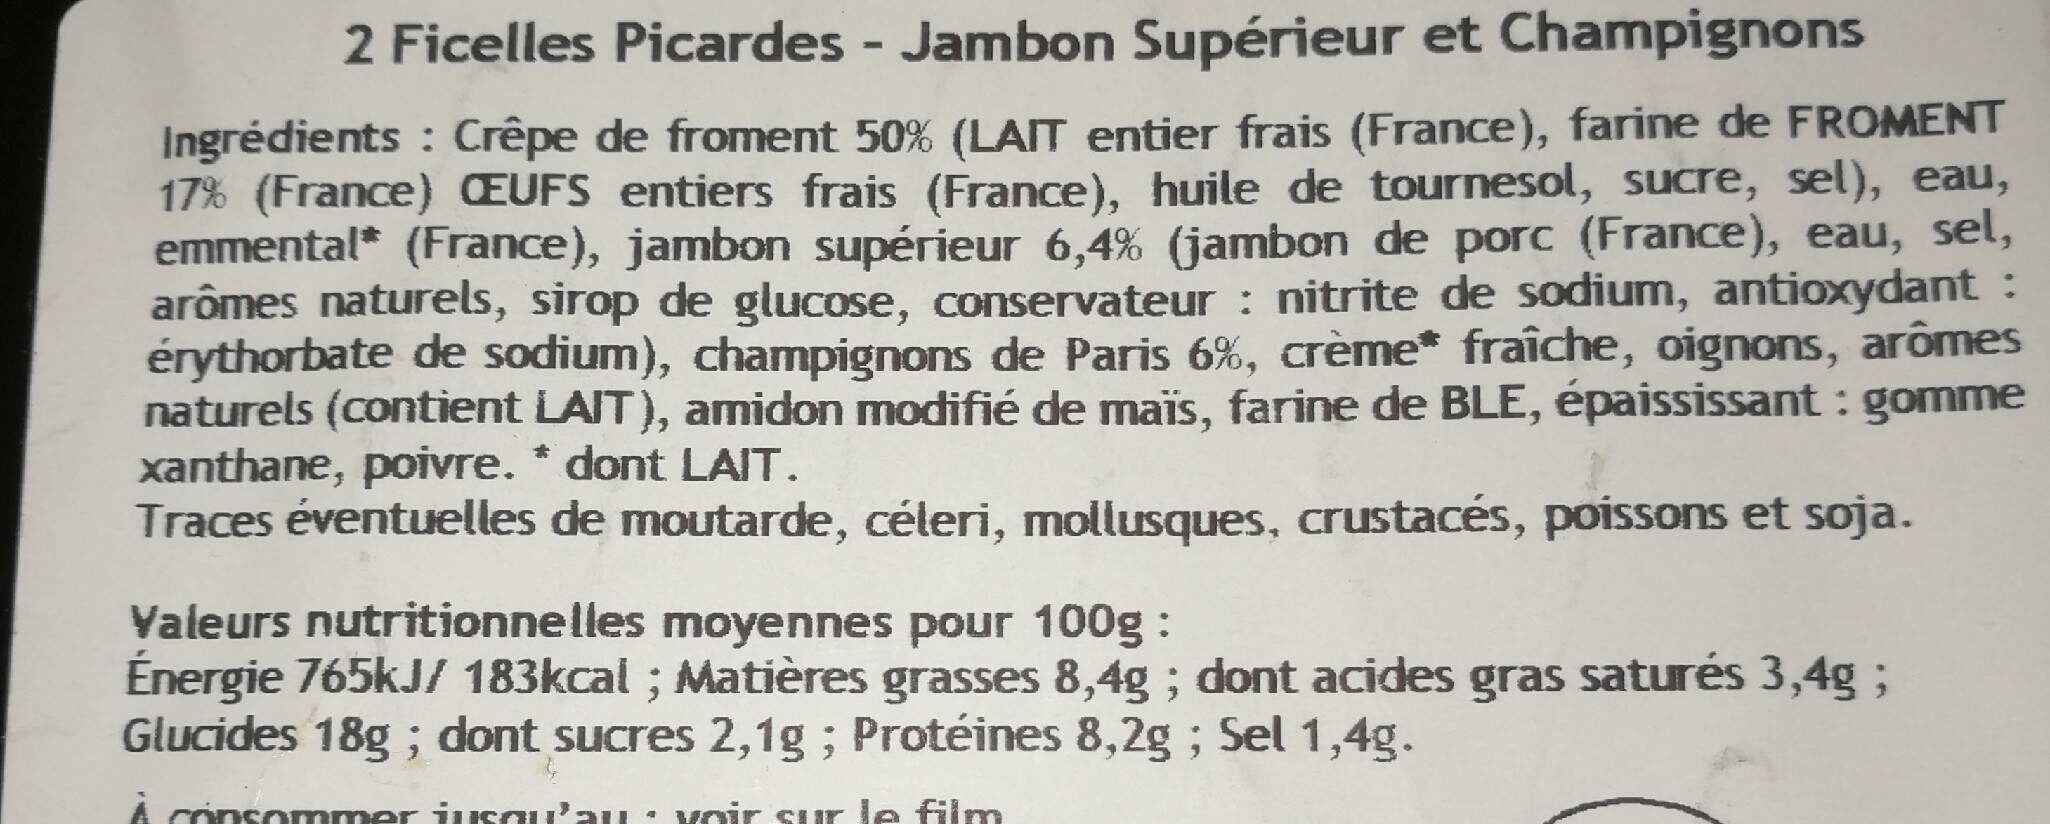 2 ficelles picardes jambon supérieur et champignons - حقائق غذائية - fr